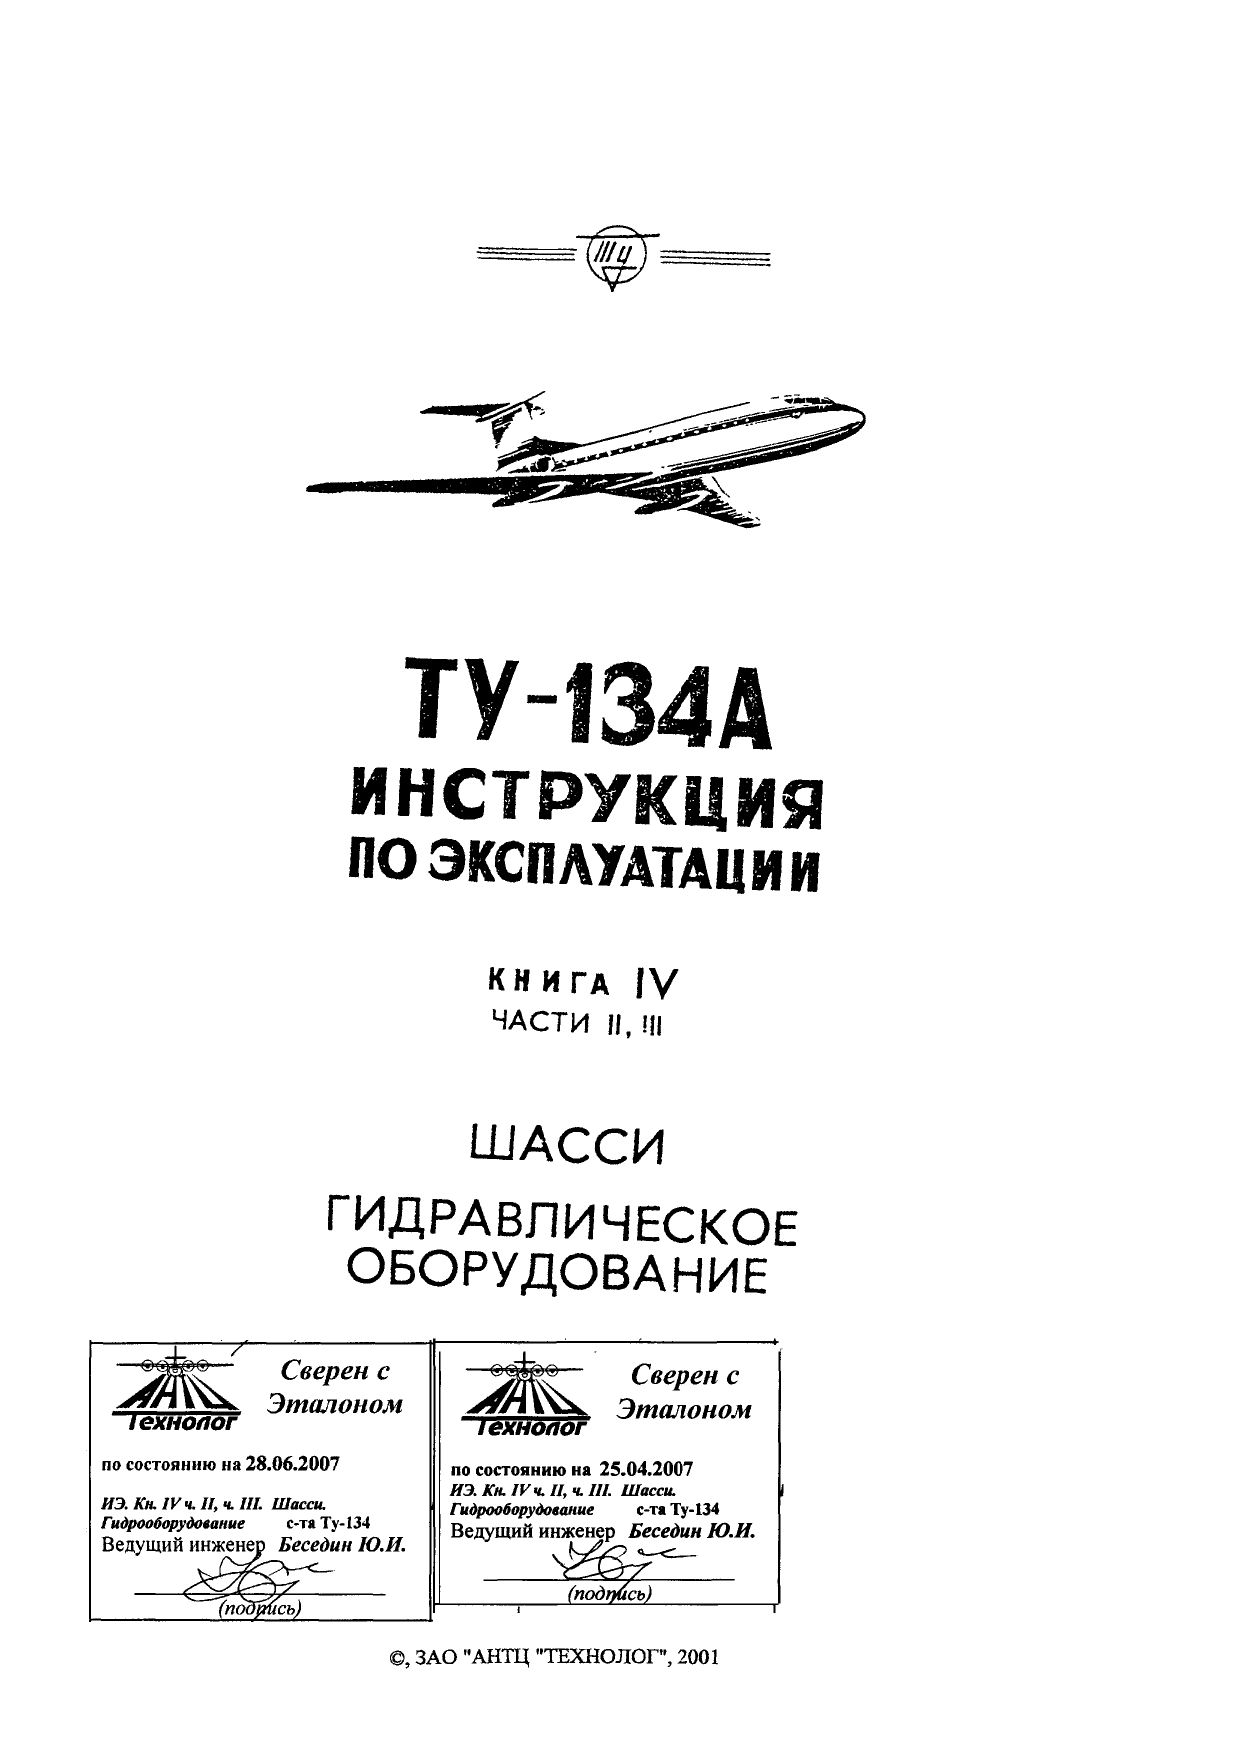 Tu-134_IYE_kn4_ch2,3_002